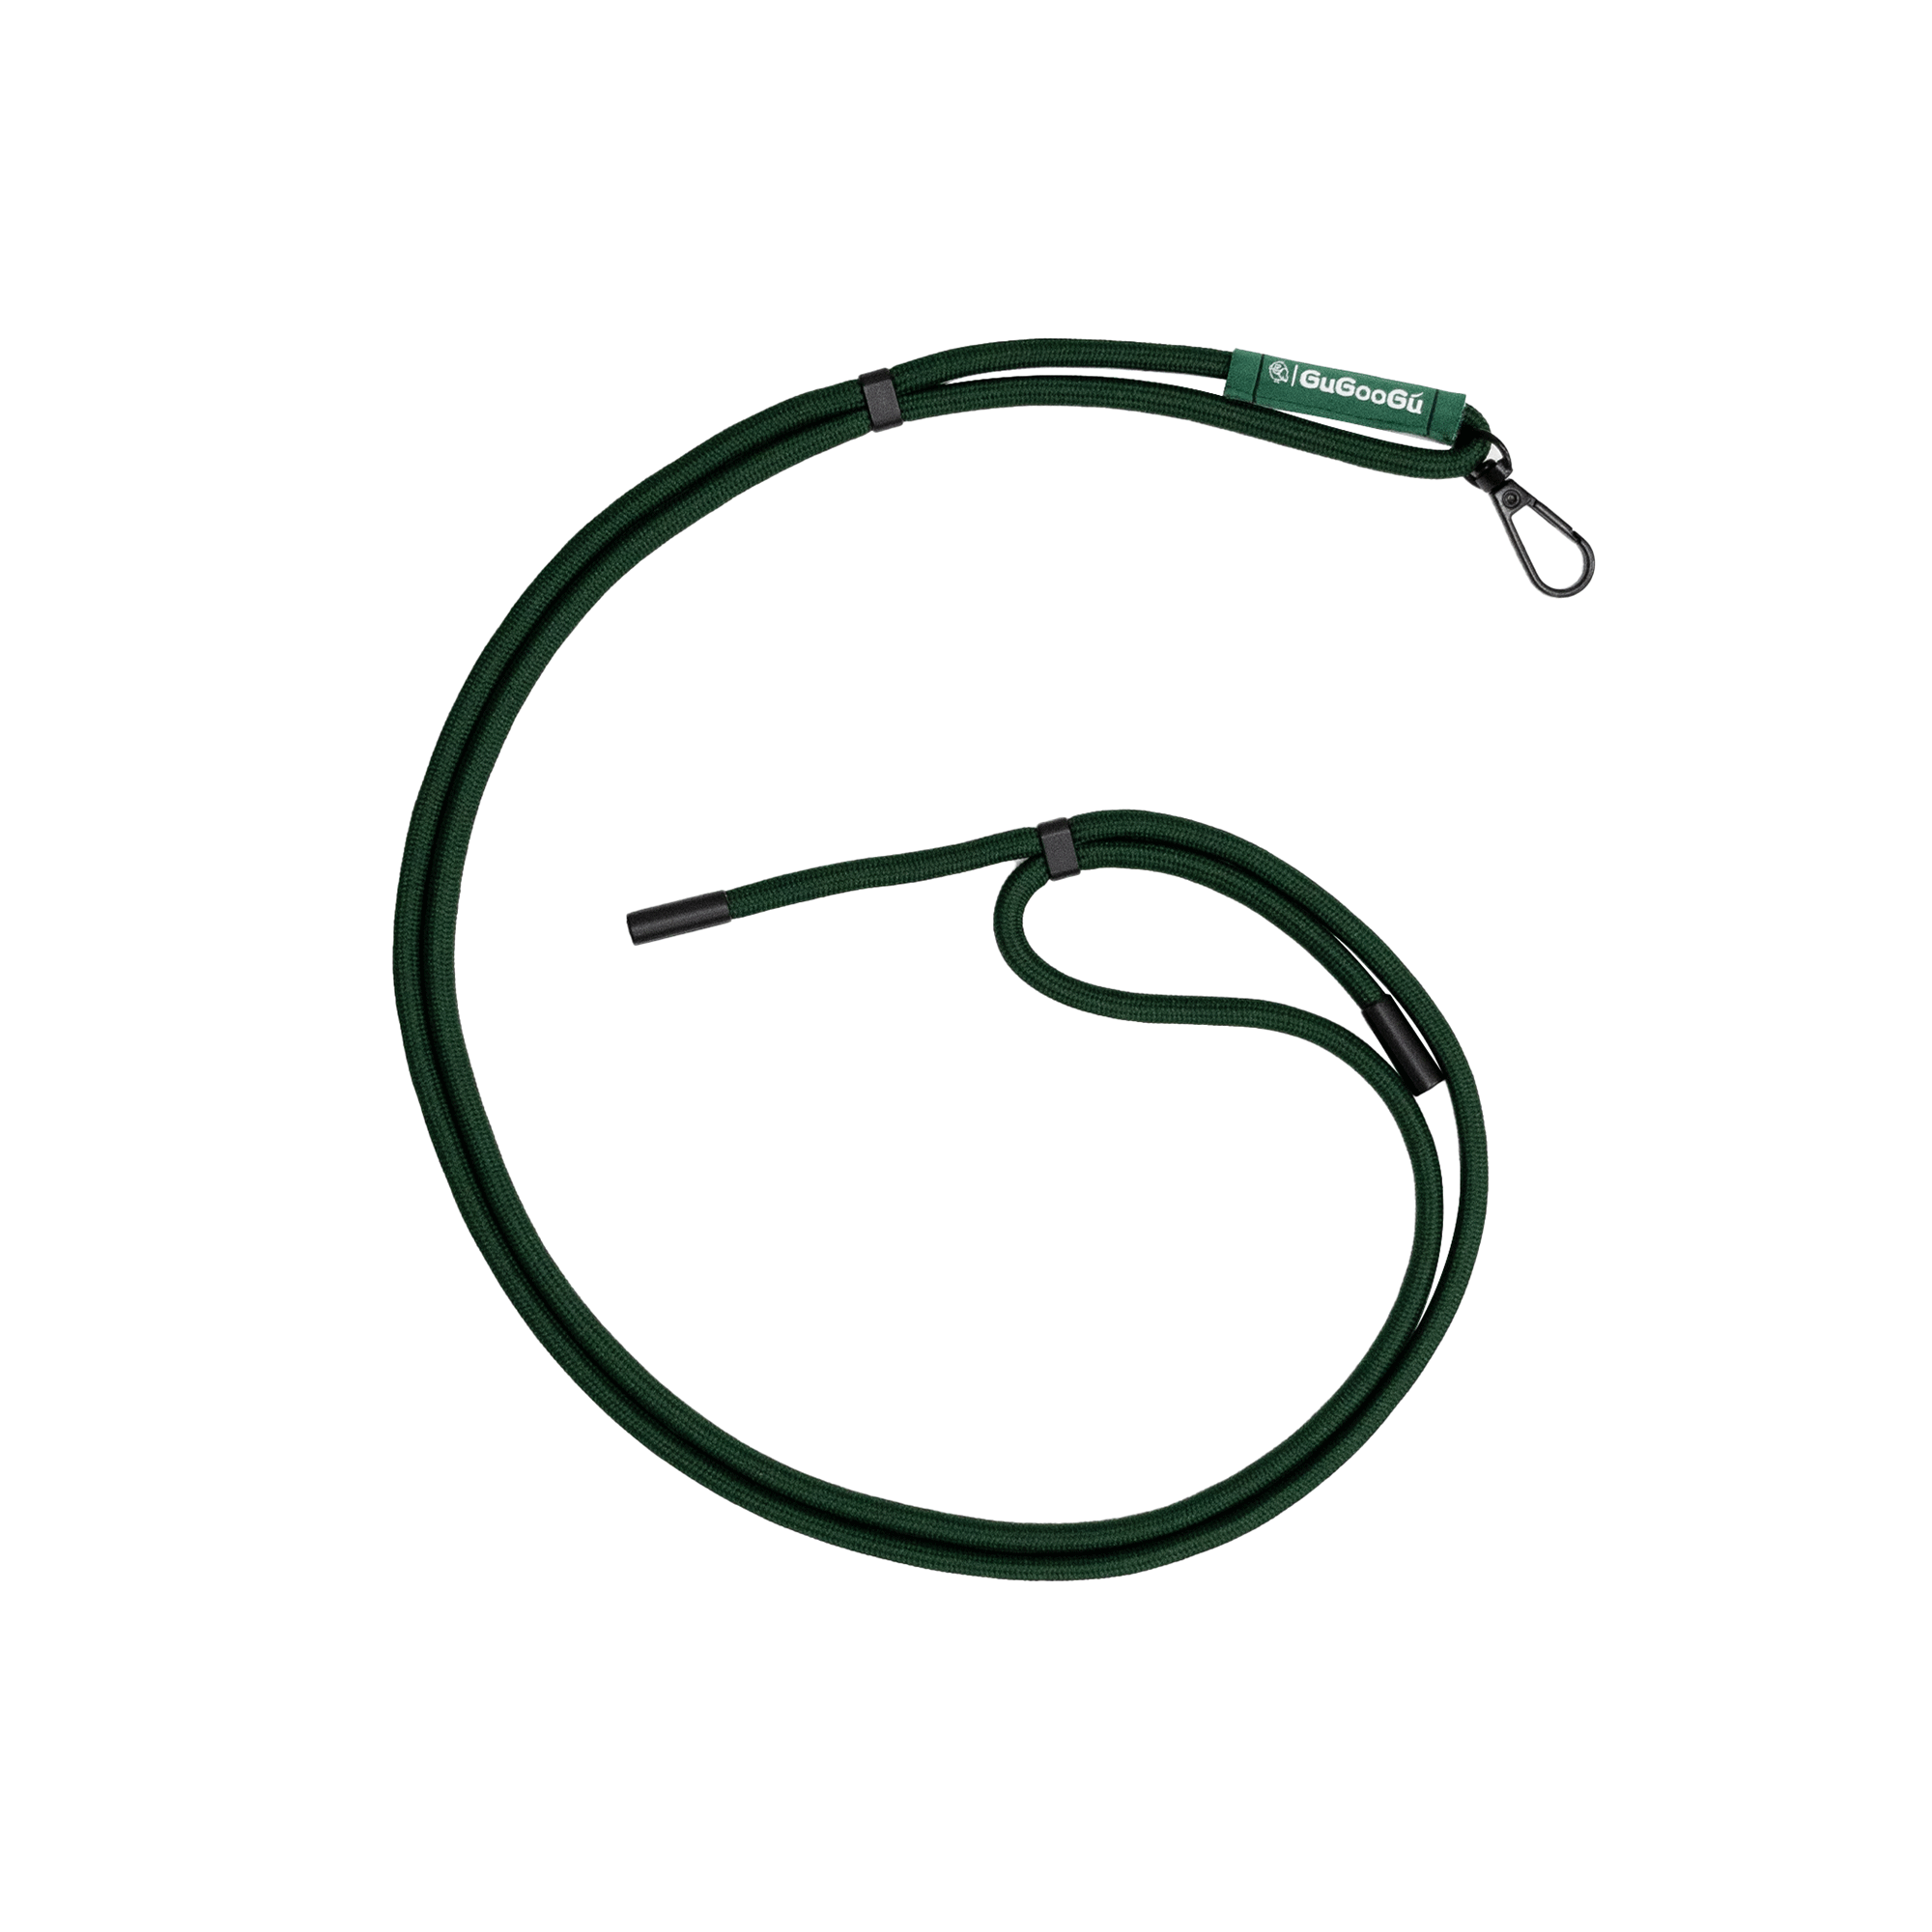 這是GUGOOGU的綠色手機掛繩，它的繩子長度可以調節。